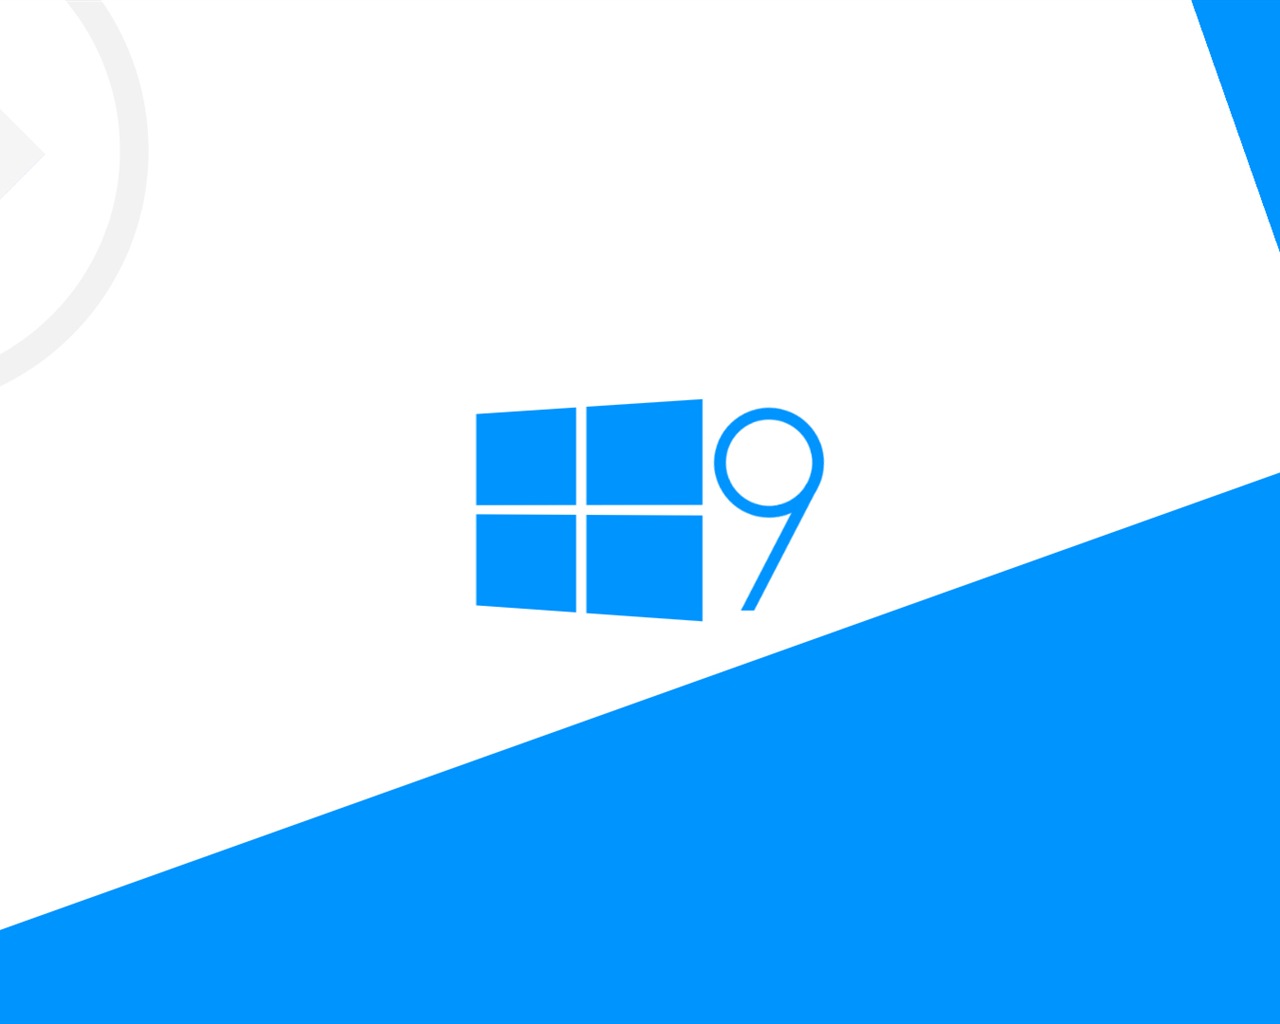 微软 Windows 9 系统主题 高清壁纸6 - 1280x1024